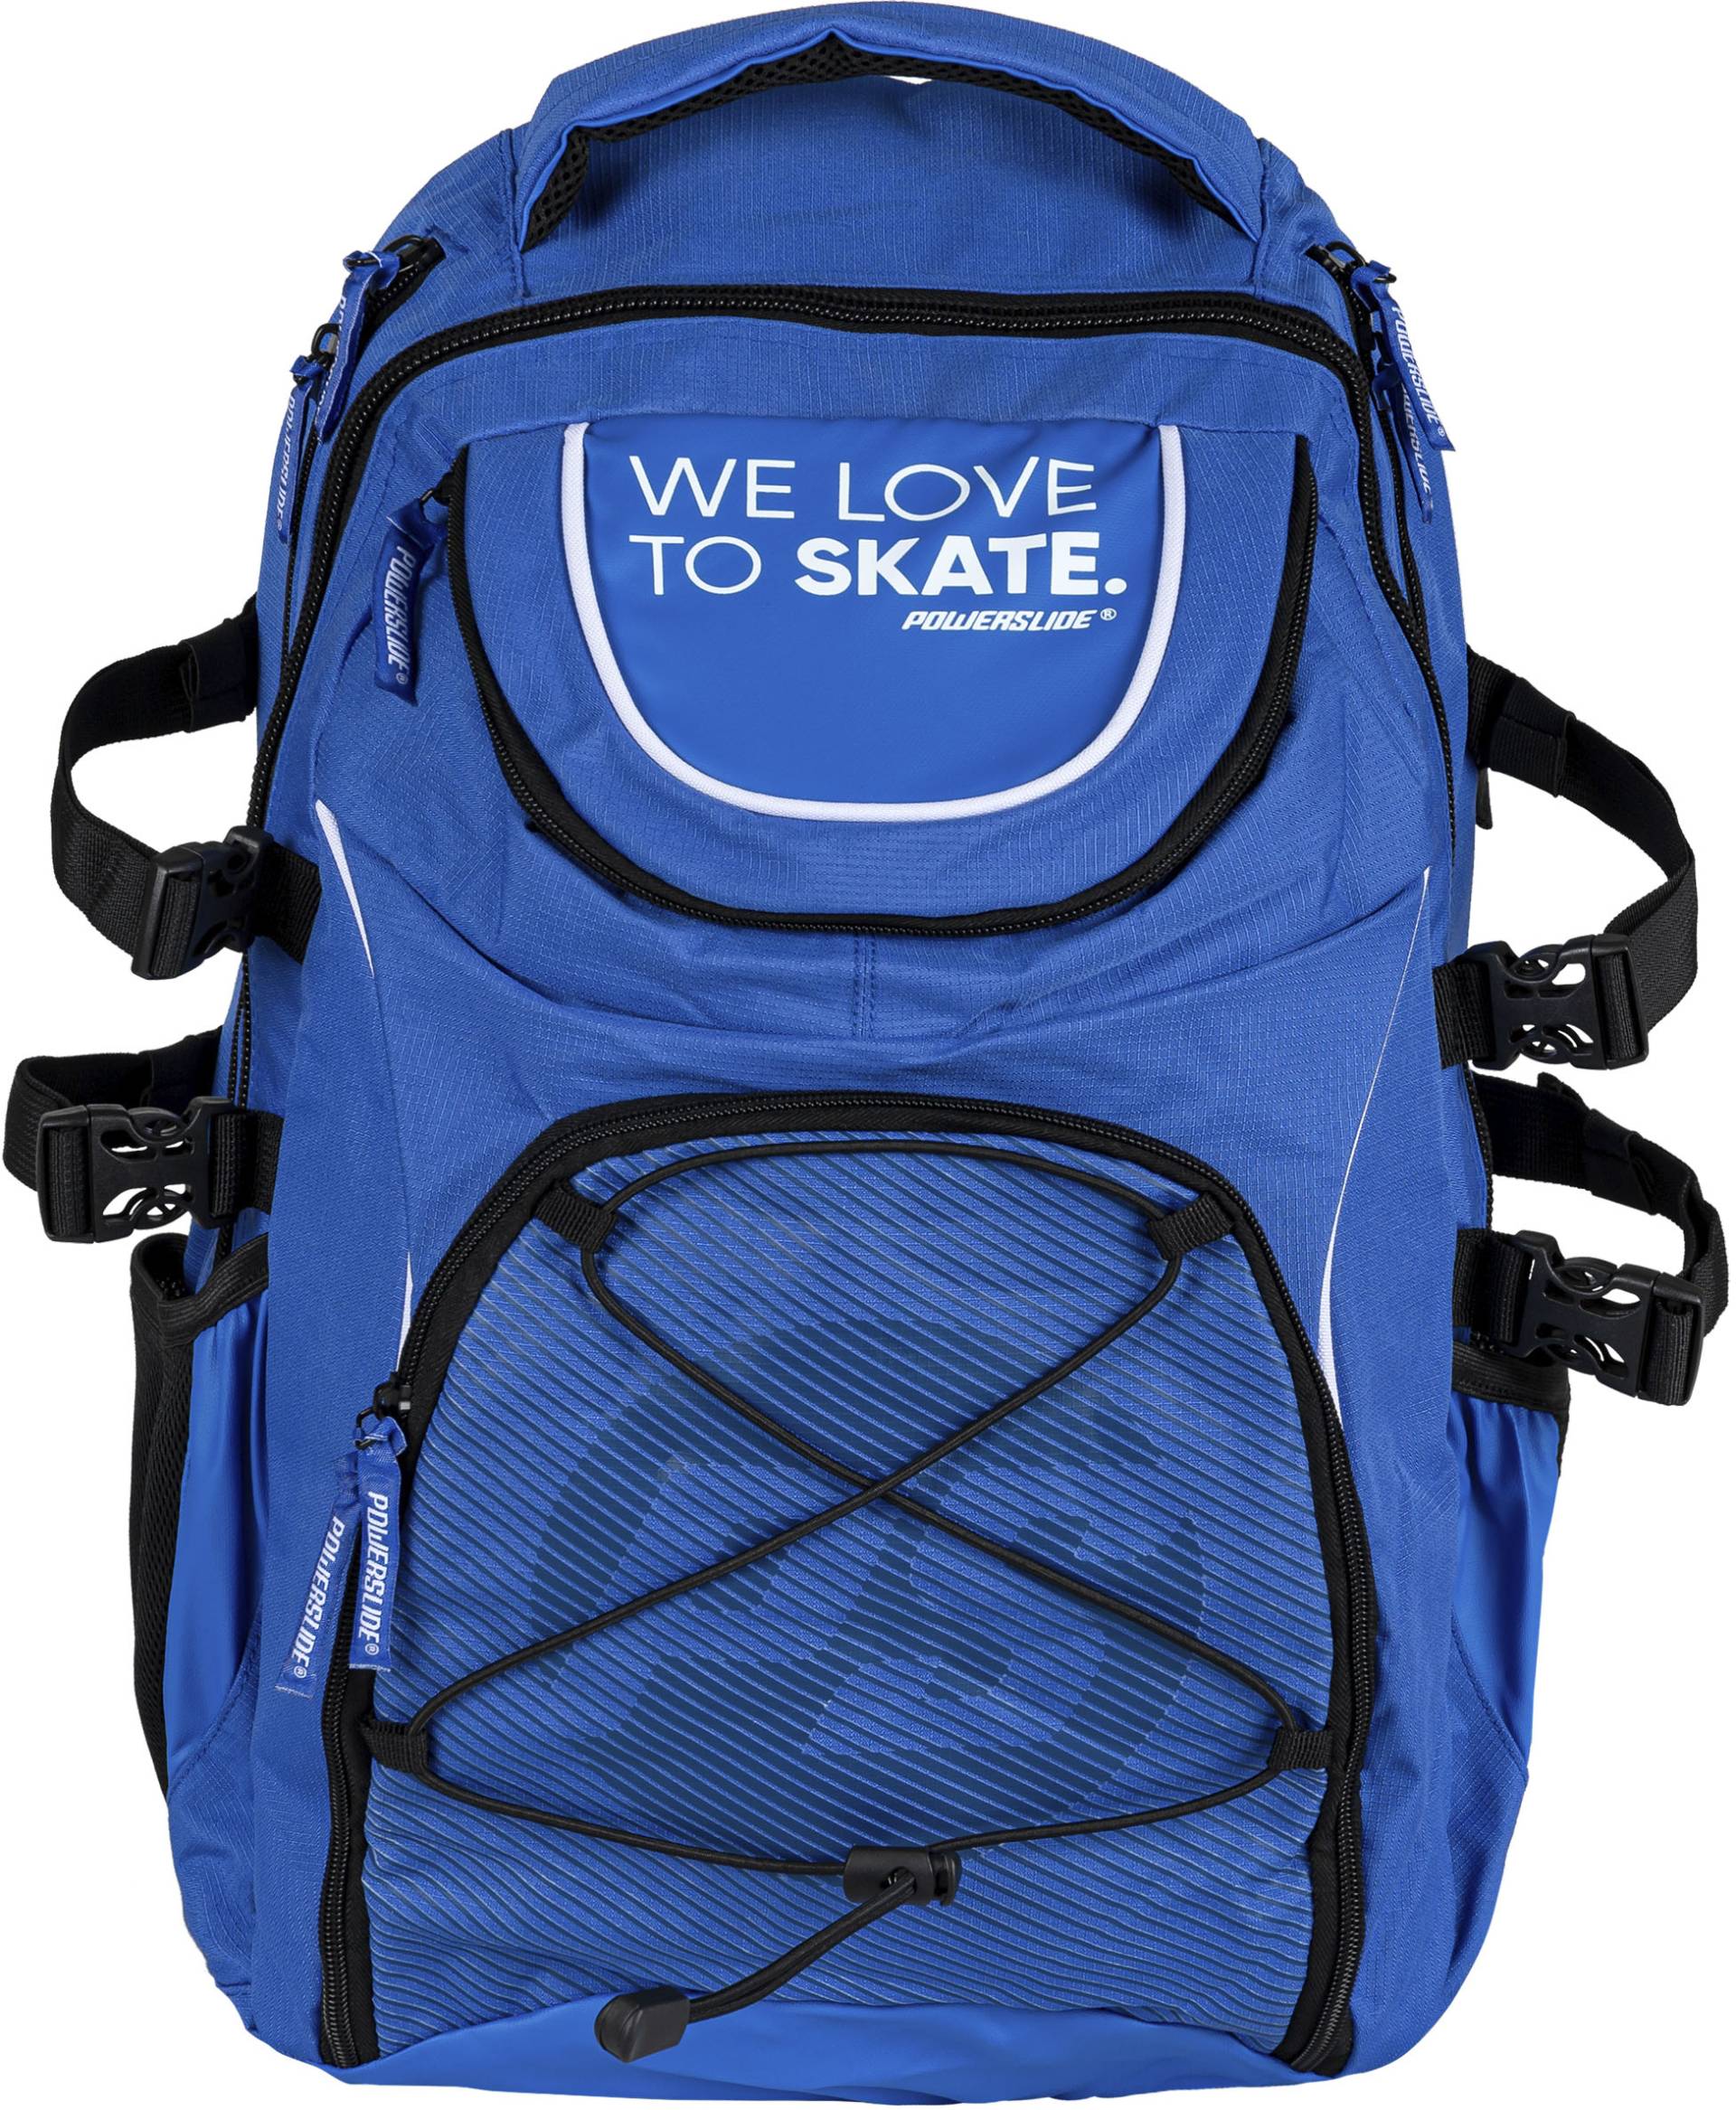 Powerslide Sportrucksack »WeLoveToSkate Backpack« von Powerslide